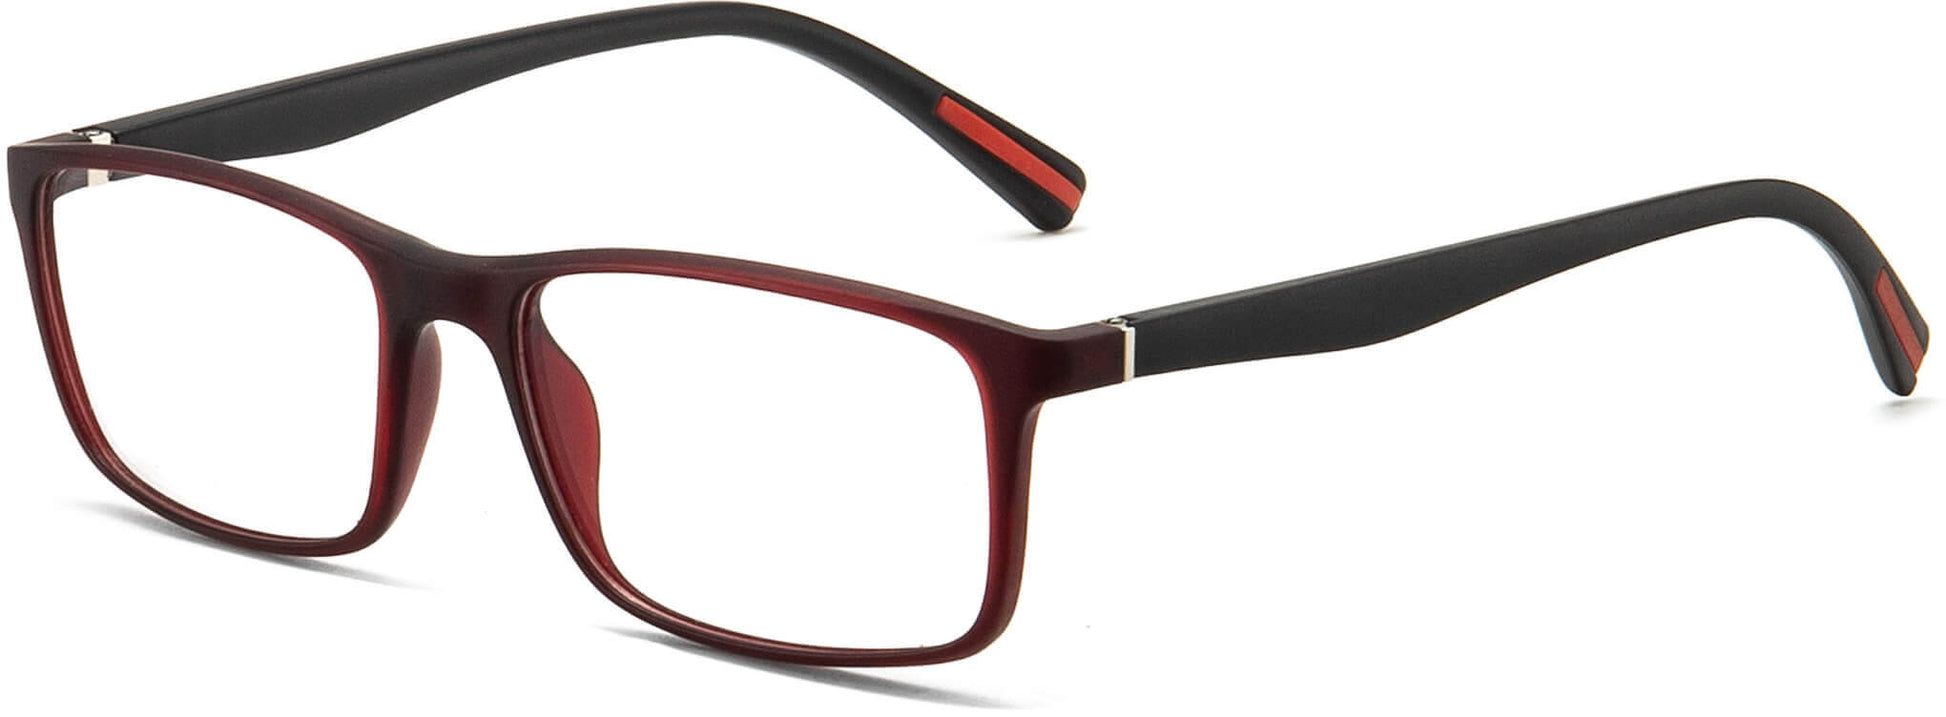 Reid Black TR90 Eyeglasses from ANRRI, Angle View